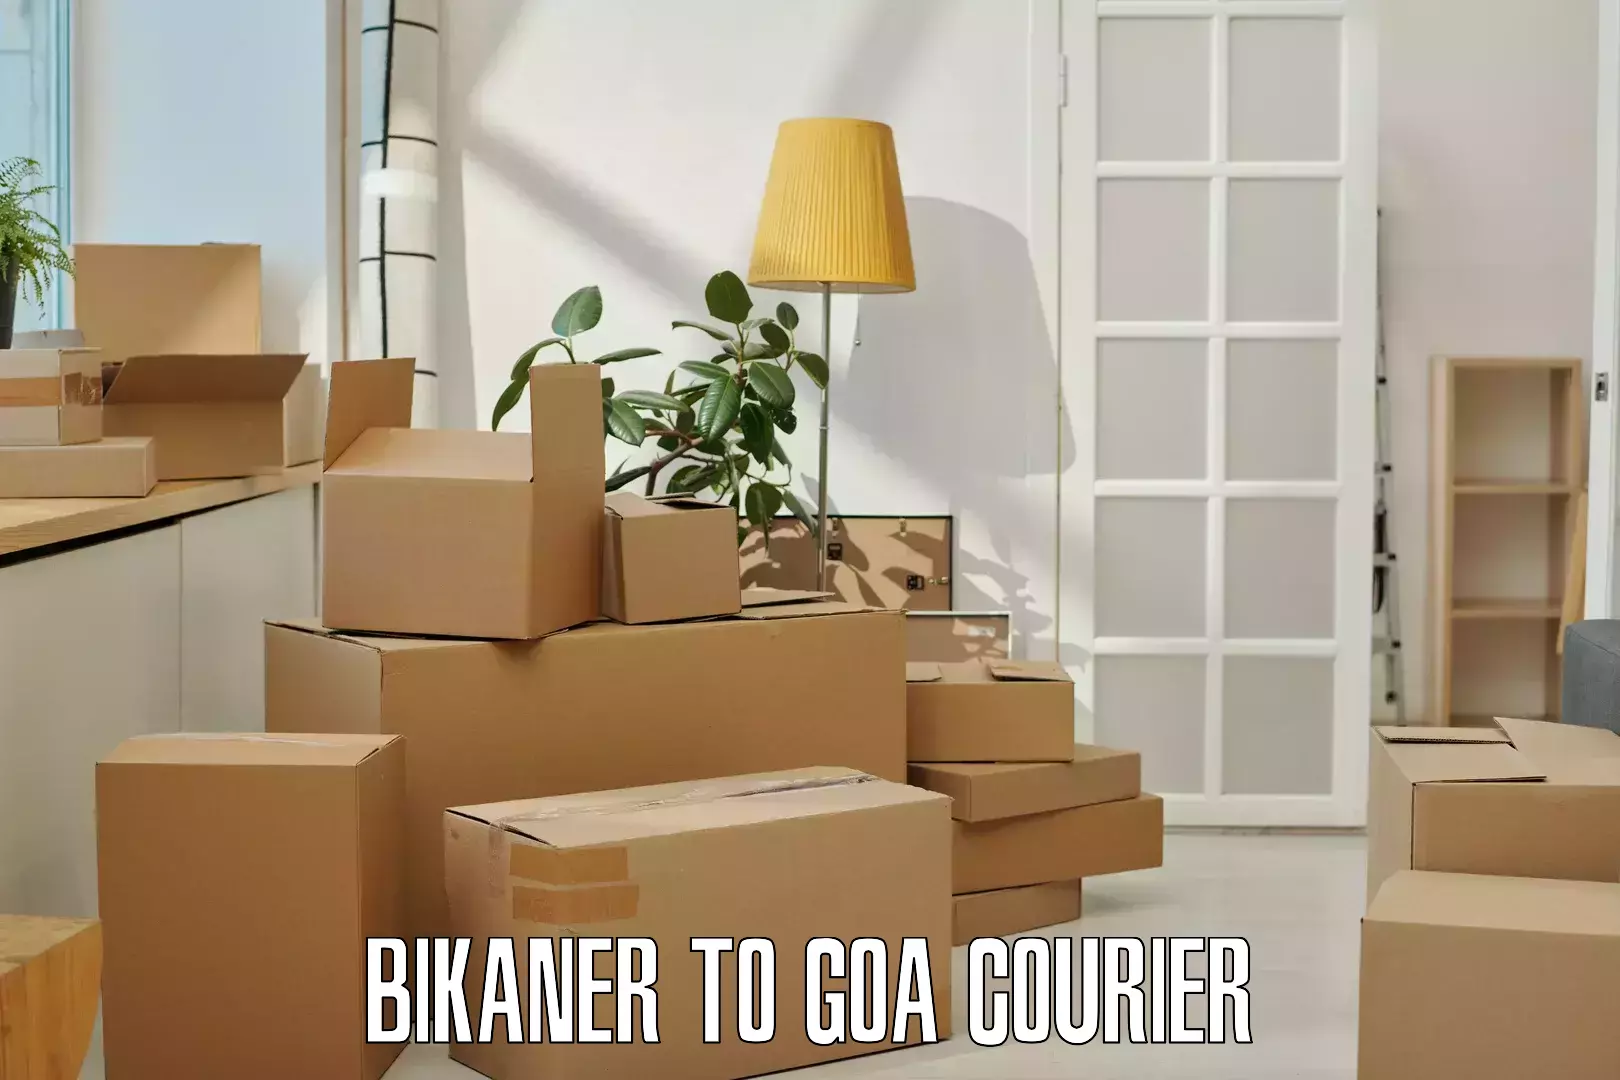 Courier service comparison in Bikaner to Panaji